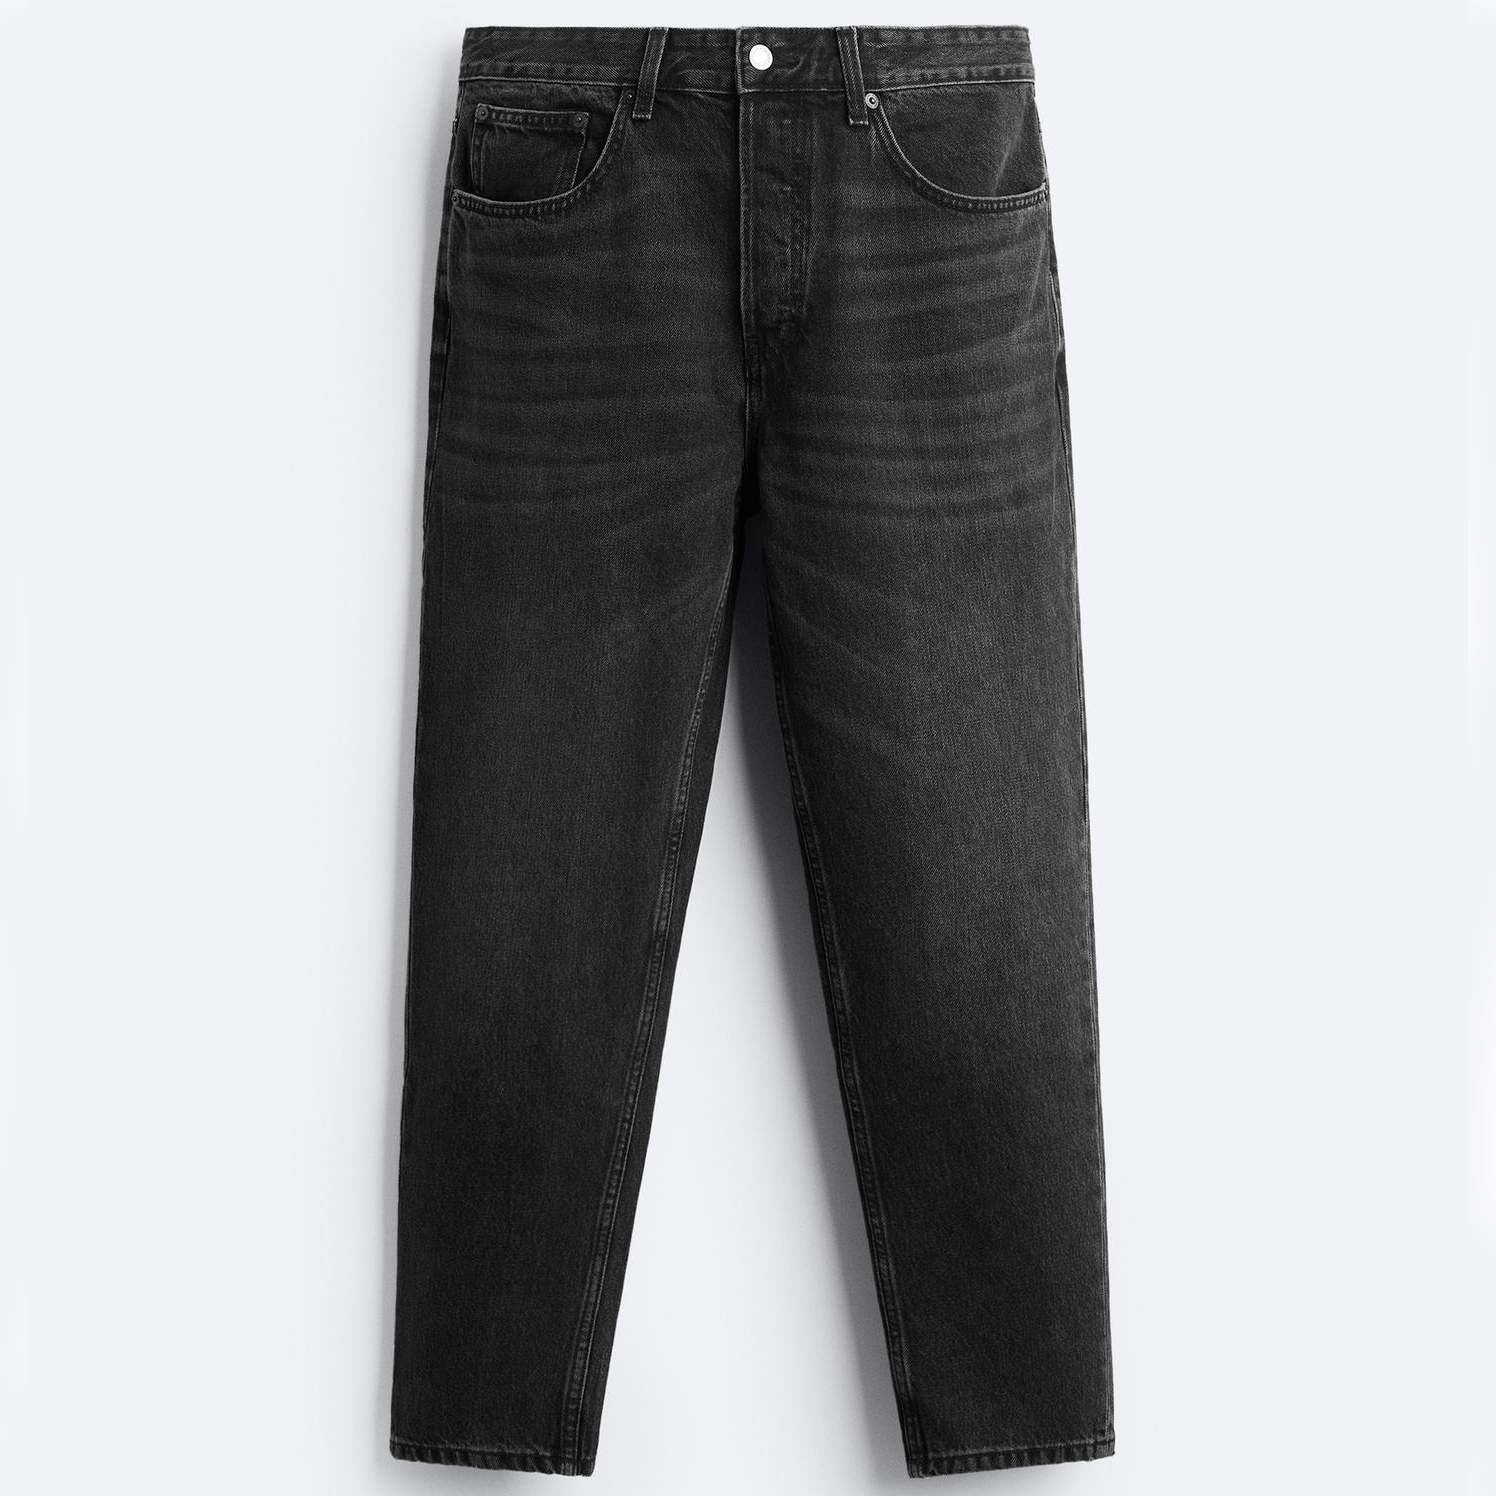 Джинсы Zara Slim Cropped-fit, черный джинсы узкие 78 застежка на молнию на щиколотке 38 fr 44 rus розовый